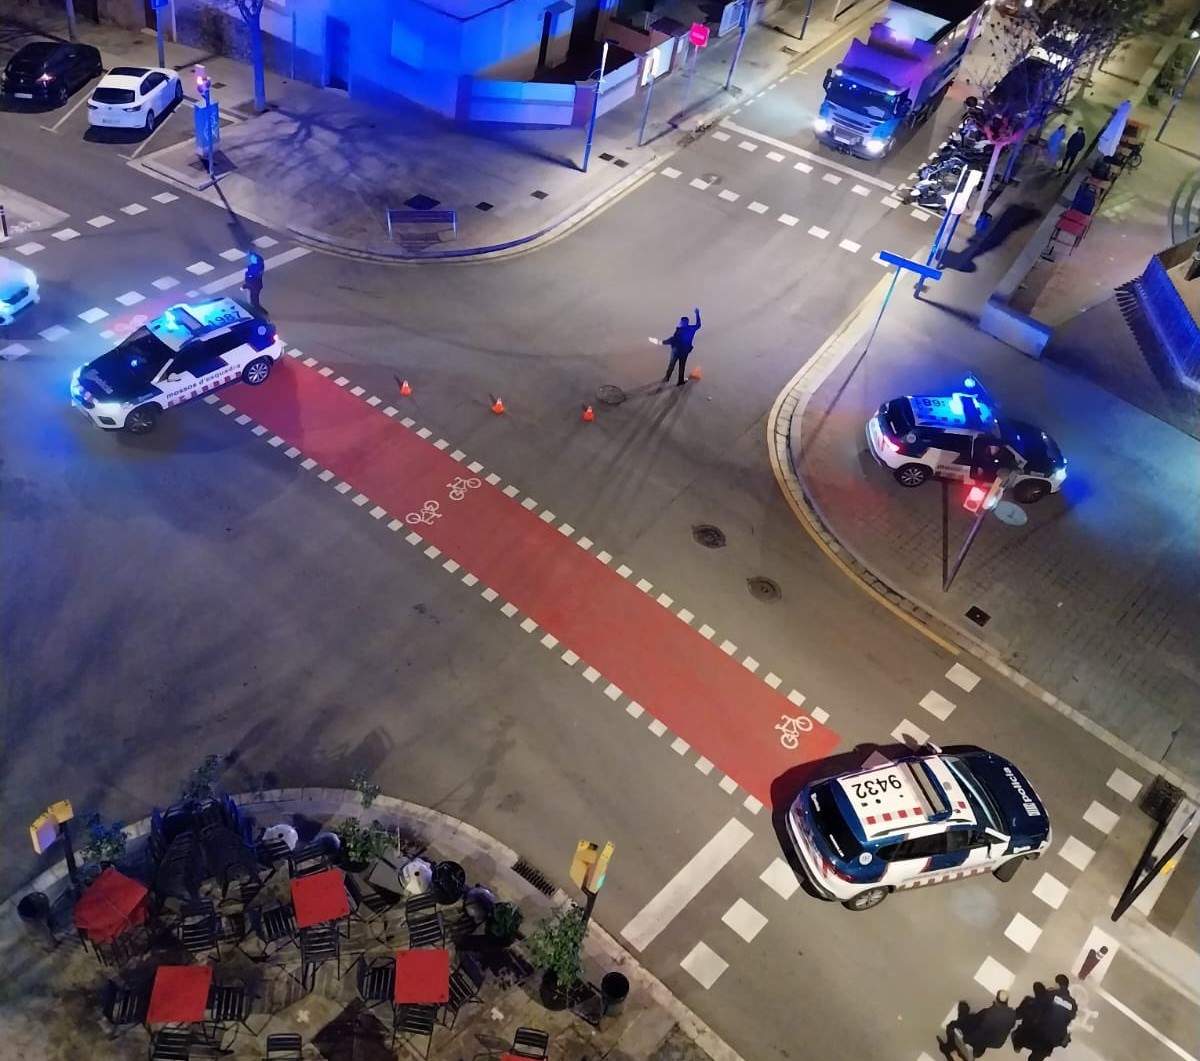 Trets nocturns a Sant Feliu de Llobregat: disparen des d'un vehicle contra la façana d'un edifici